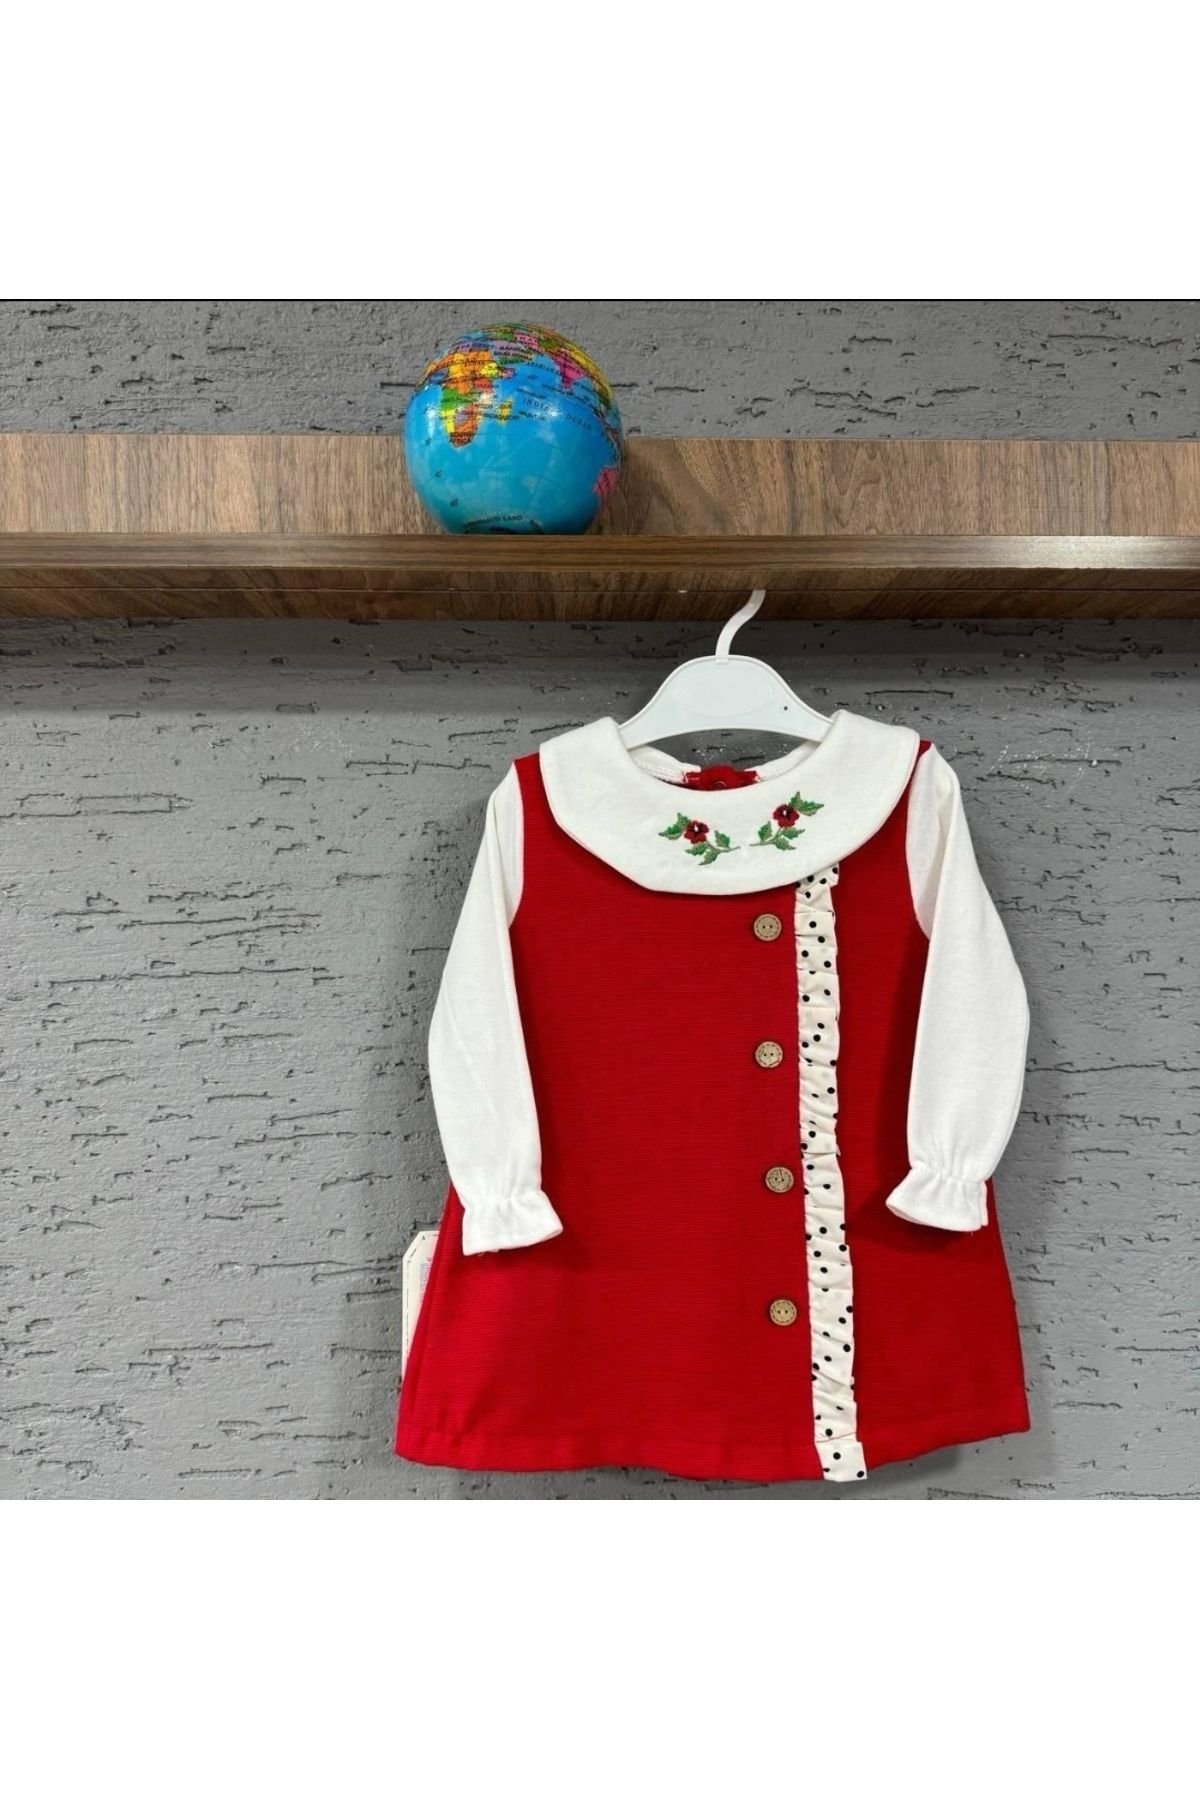 EFULİM Çiçek Nakışlı Bebe Yaka Düğme Detaylı Kız Çocuk Bayramlık Elbise